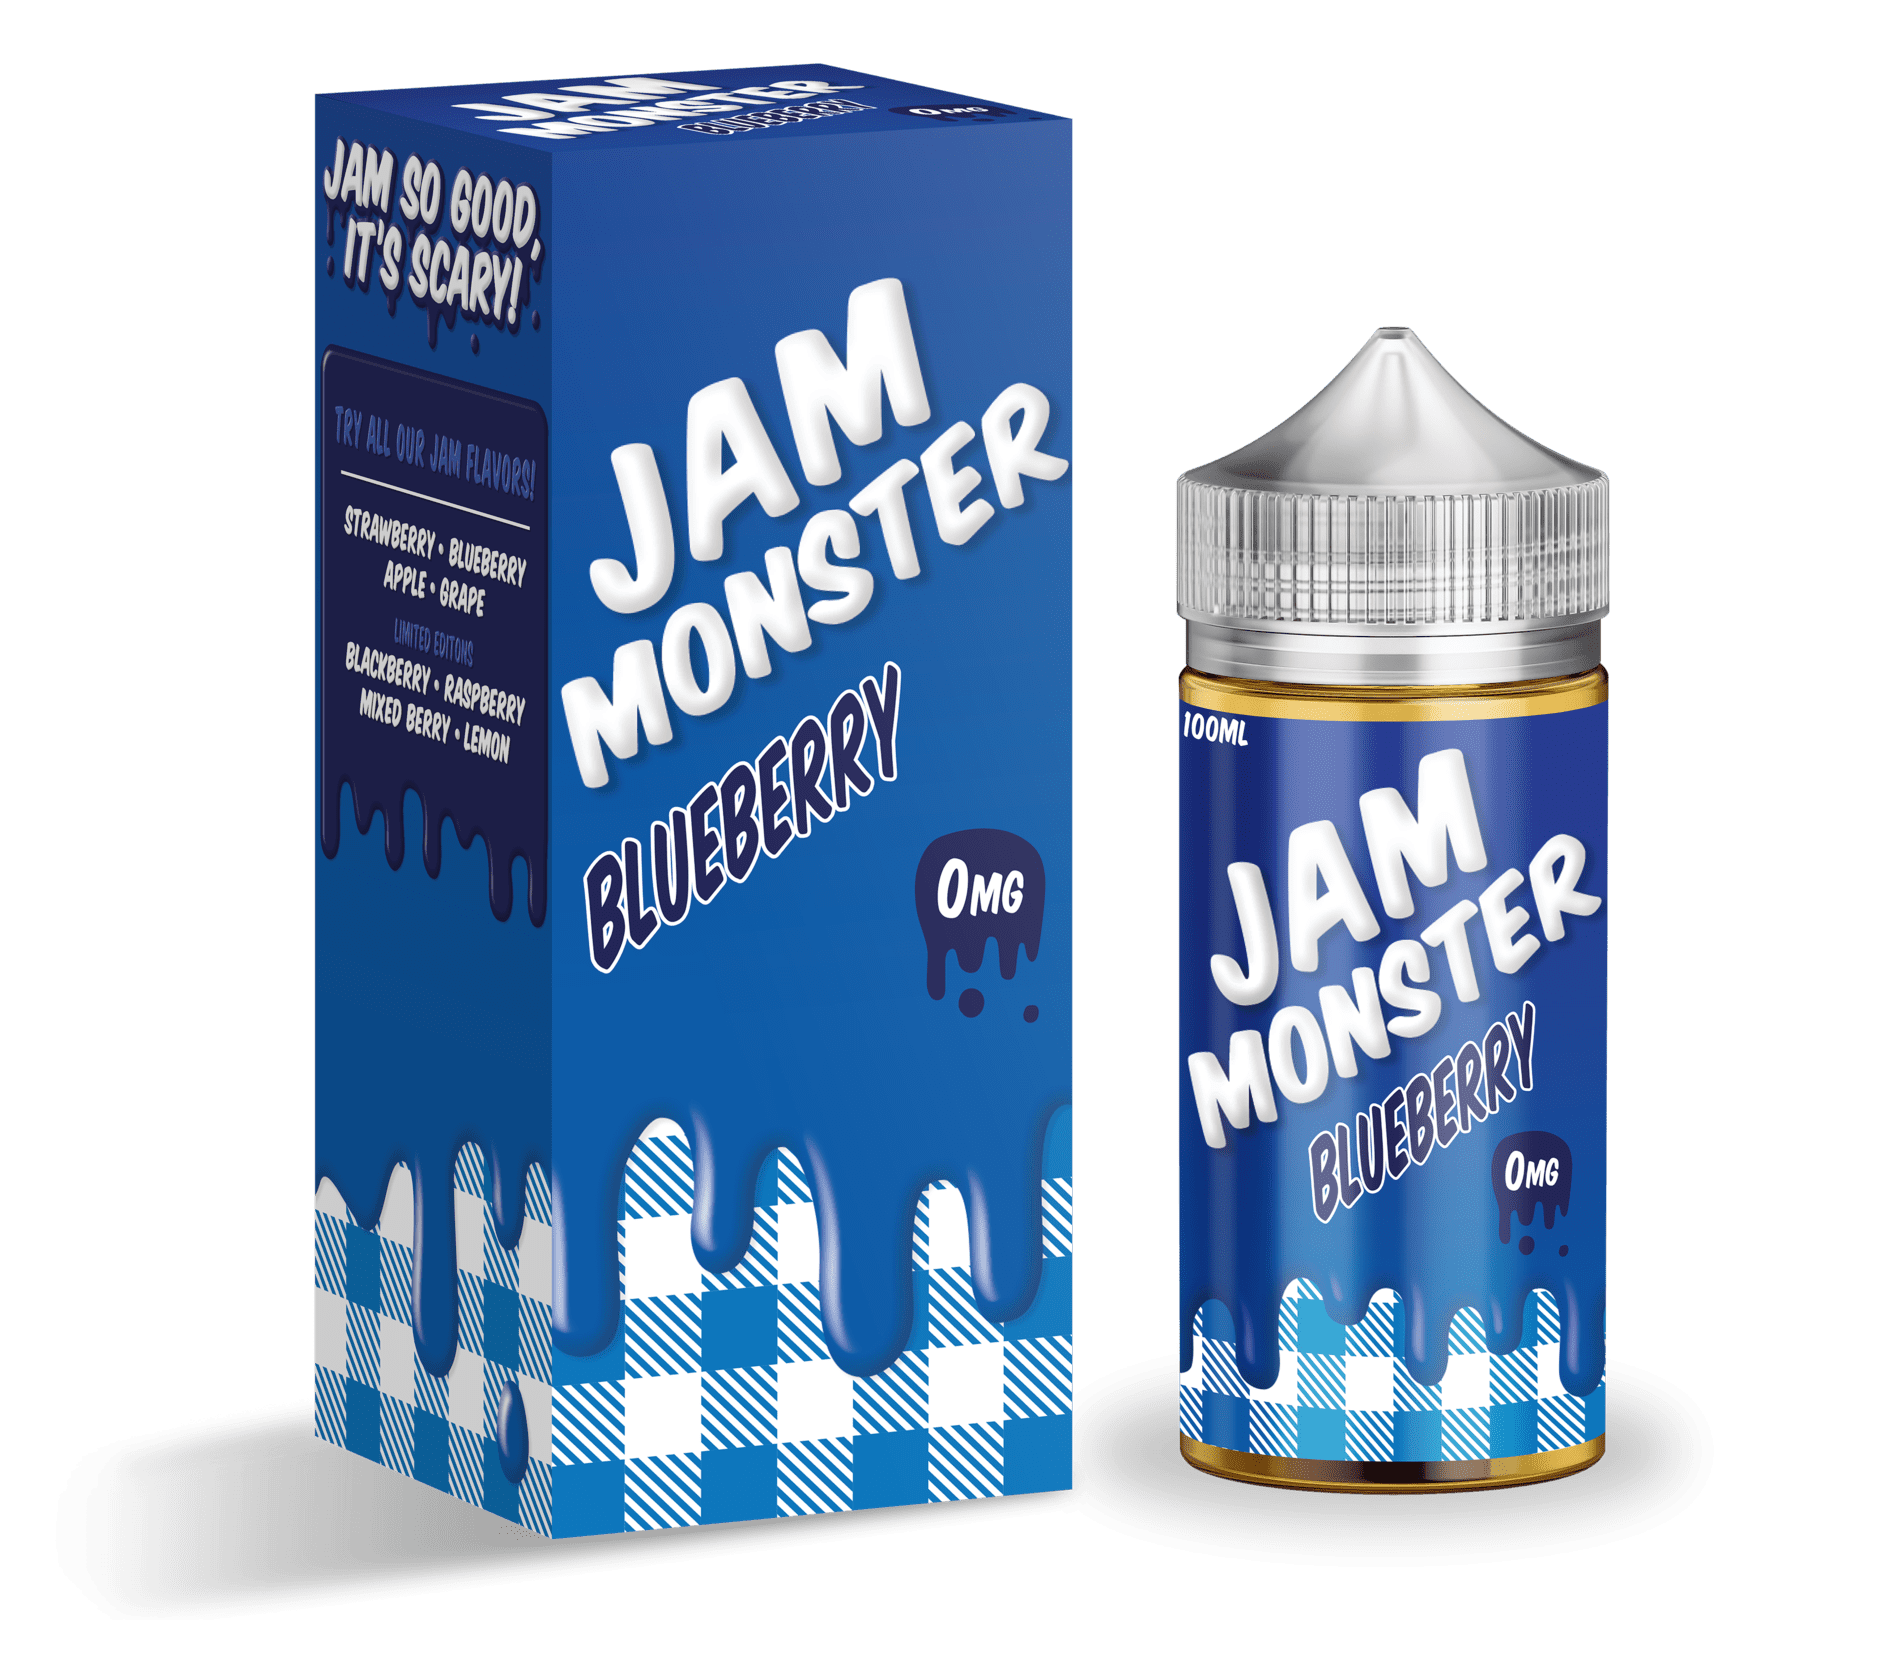 Jam Monster E Liquid - Blueberry - 100ml